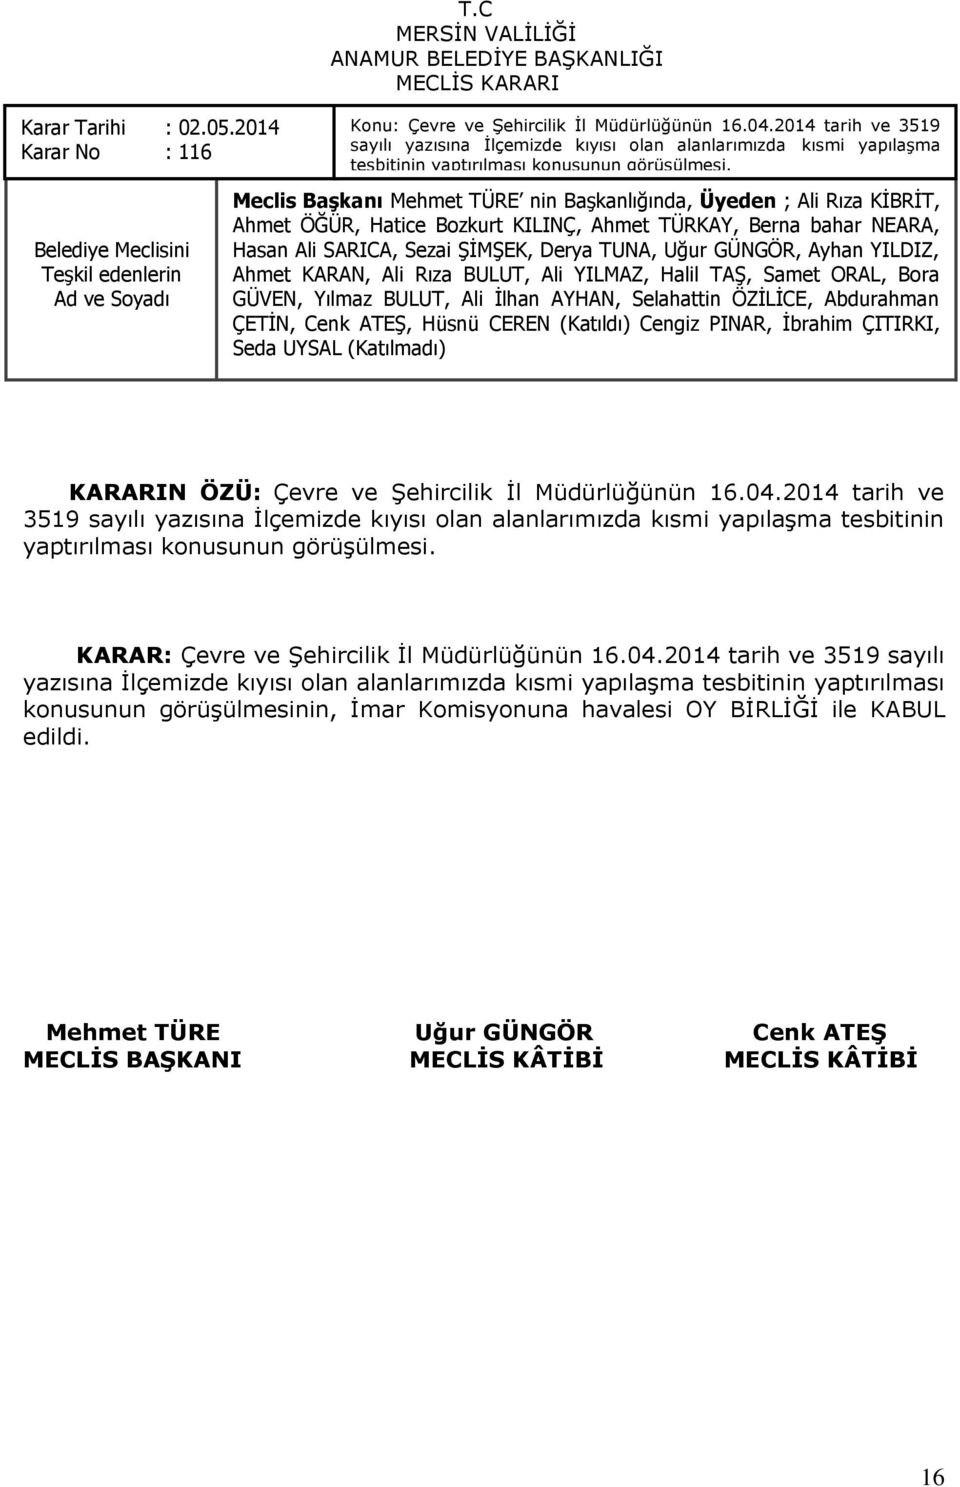 KARARIN ÖZÜ: Çevre ve ġehircilik Ġl Müdürlüğünün 16.04.